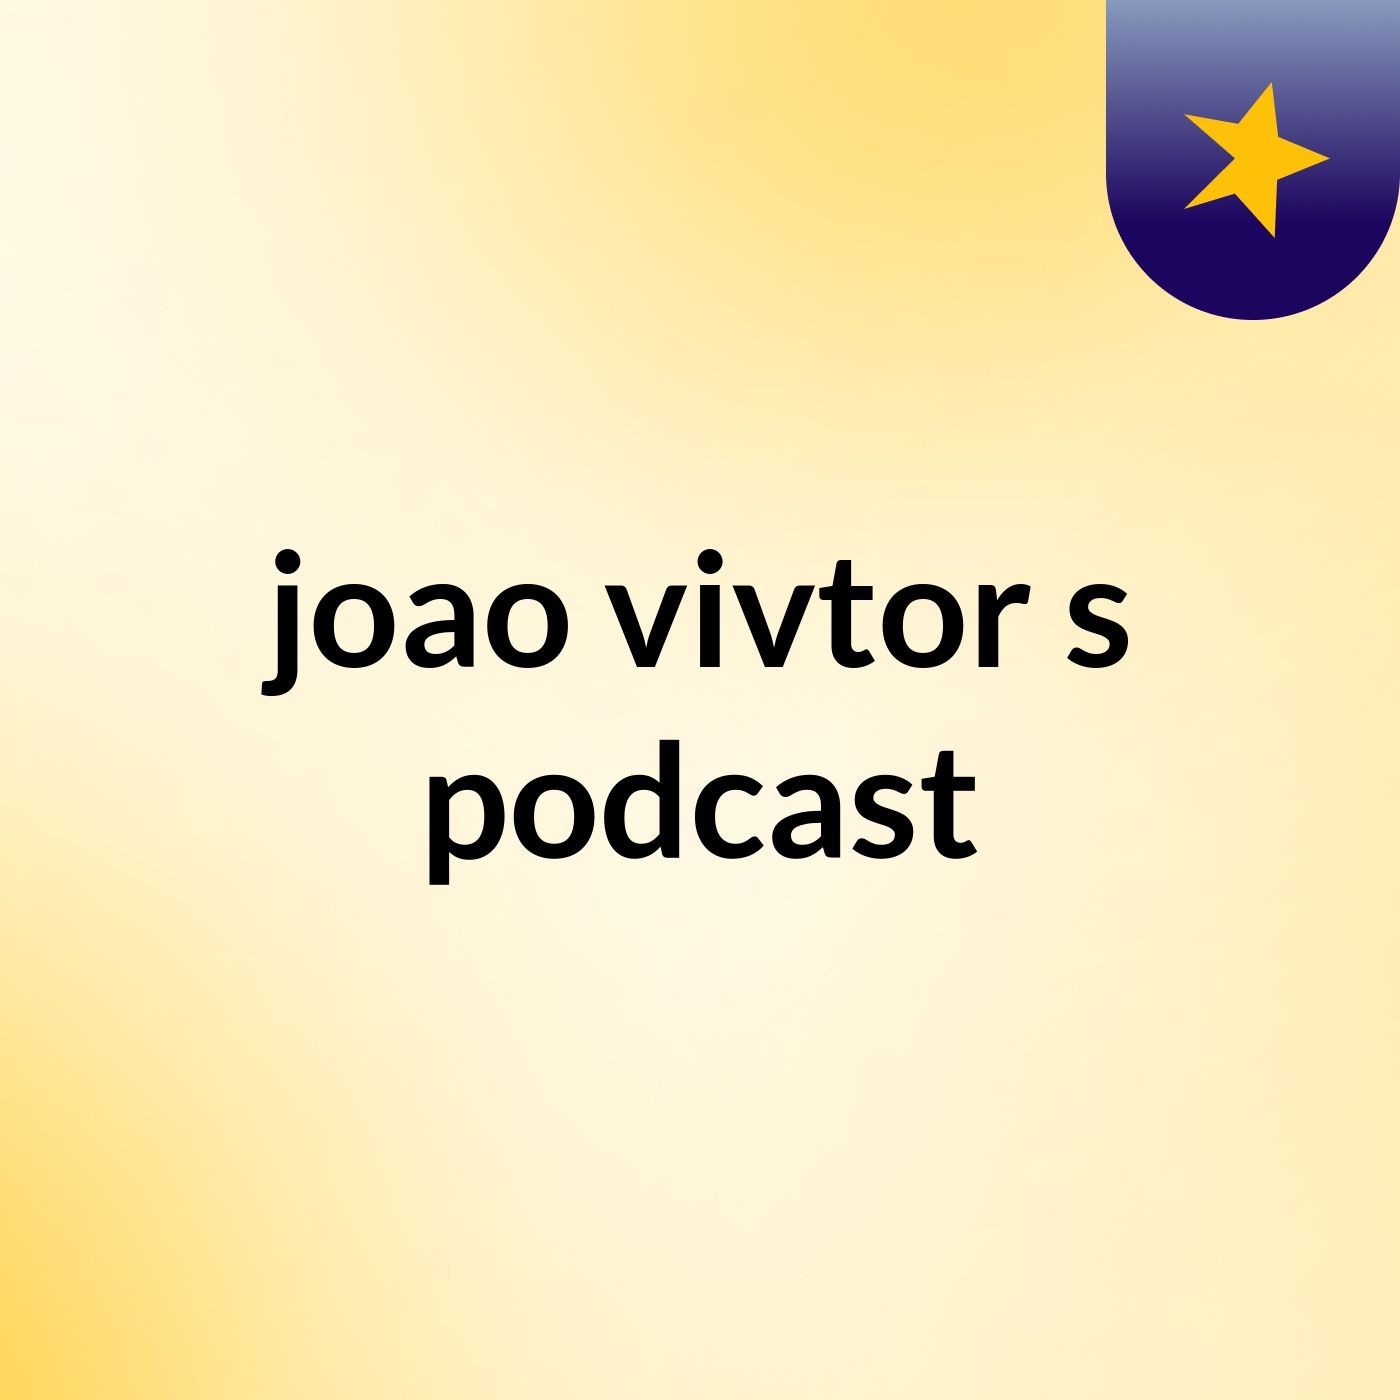 joao vivtor's podcast